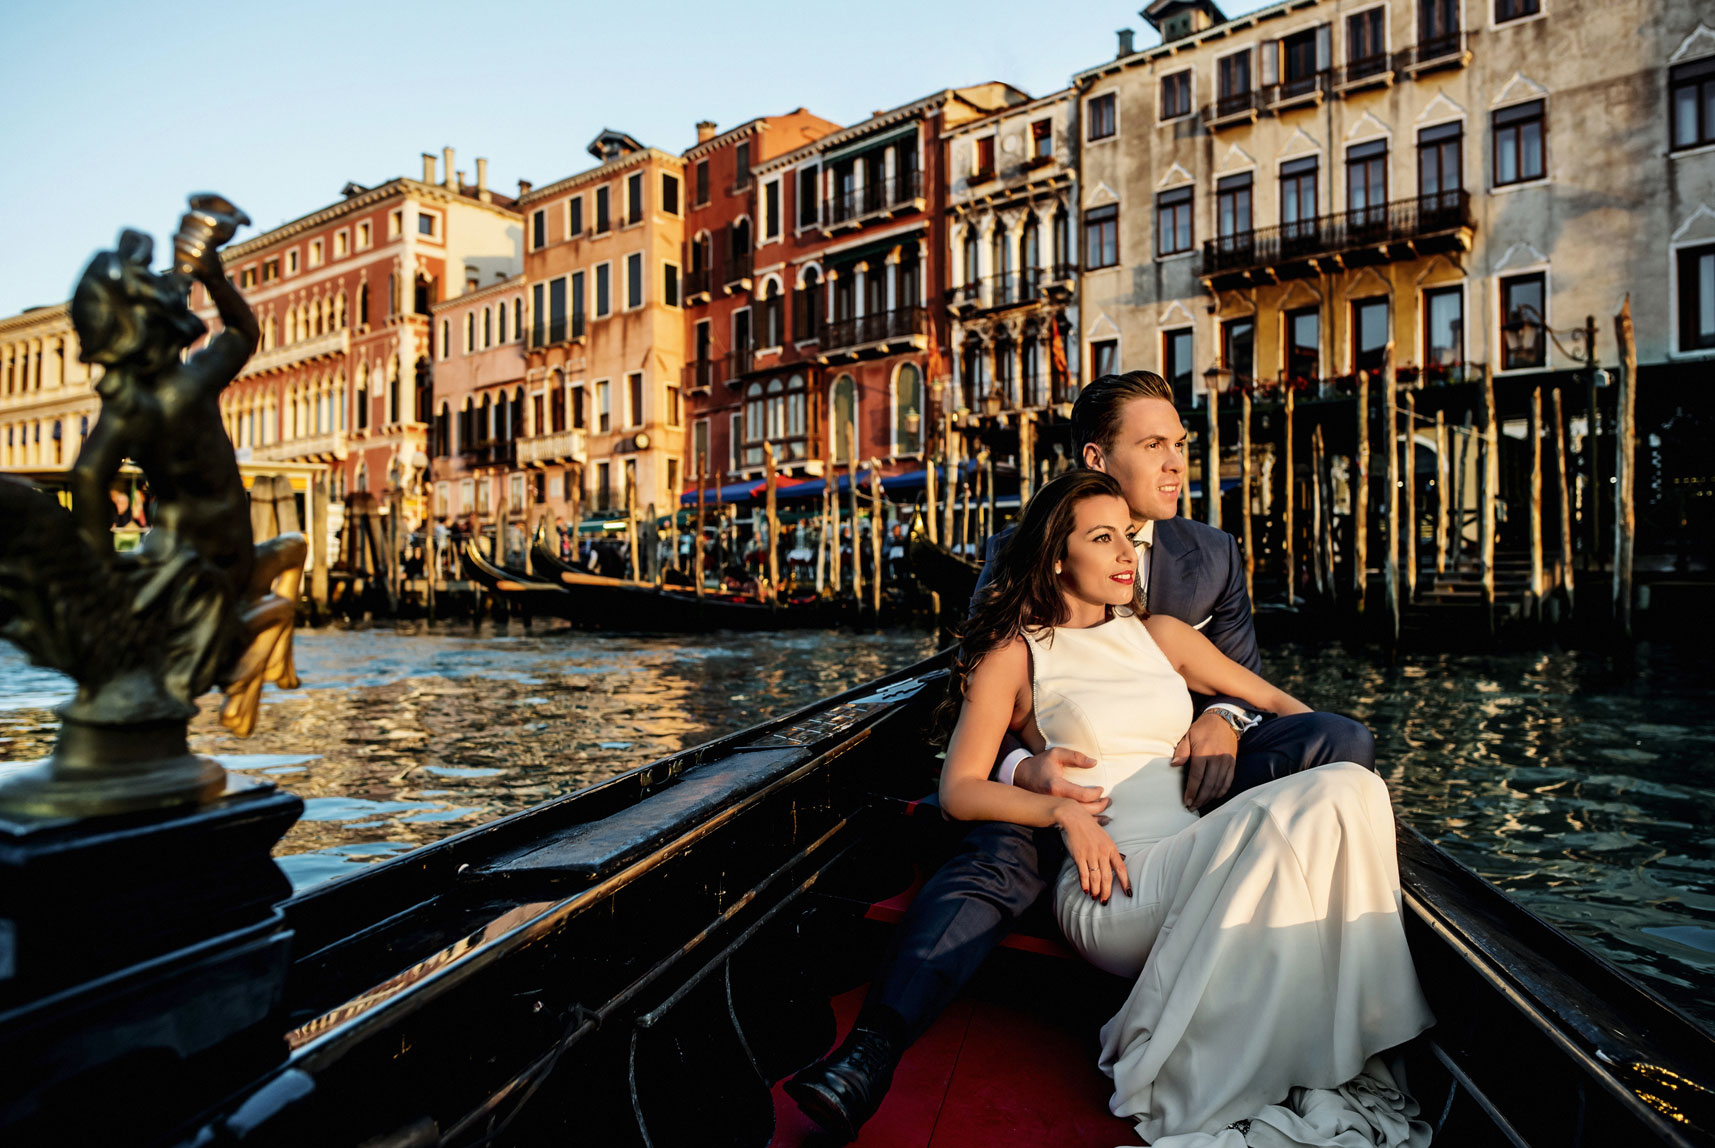 Post boda por Ginés López fotógrafos de boda en Murcía, paseo en góndola por Venecia.